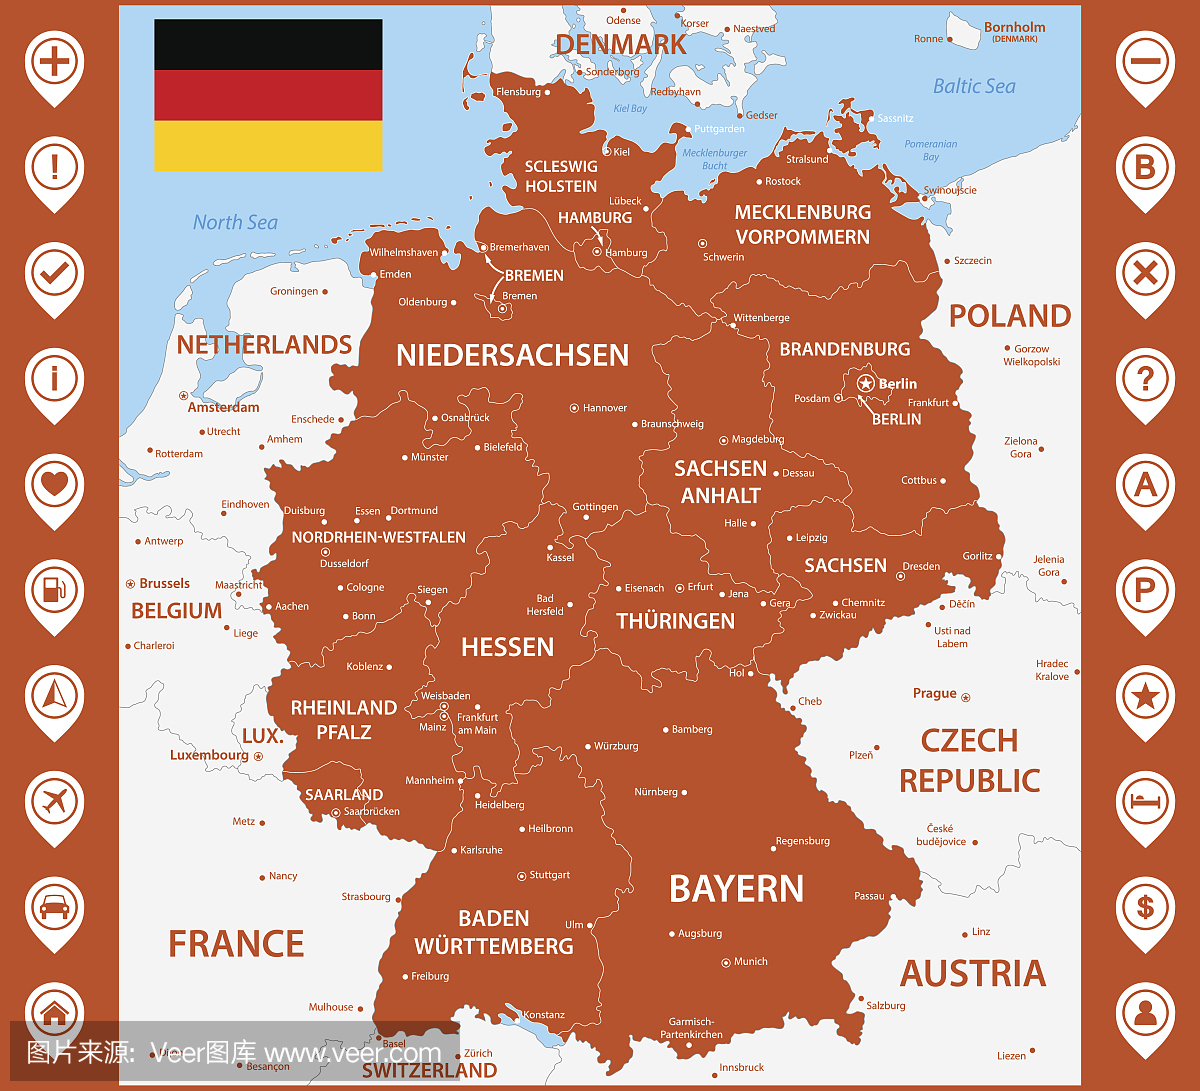 德国与地区或州和城市的资料详细地图。使用地